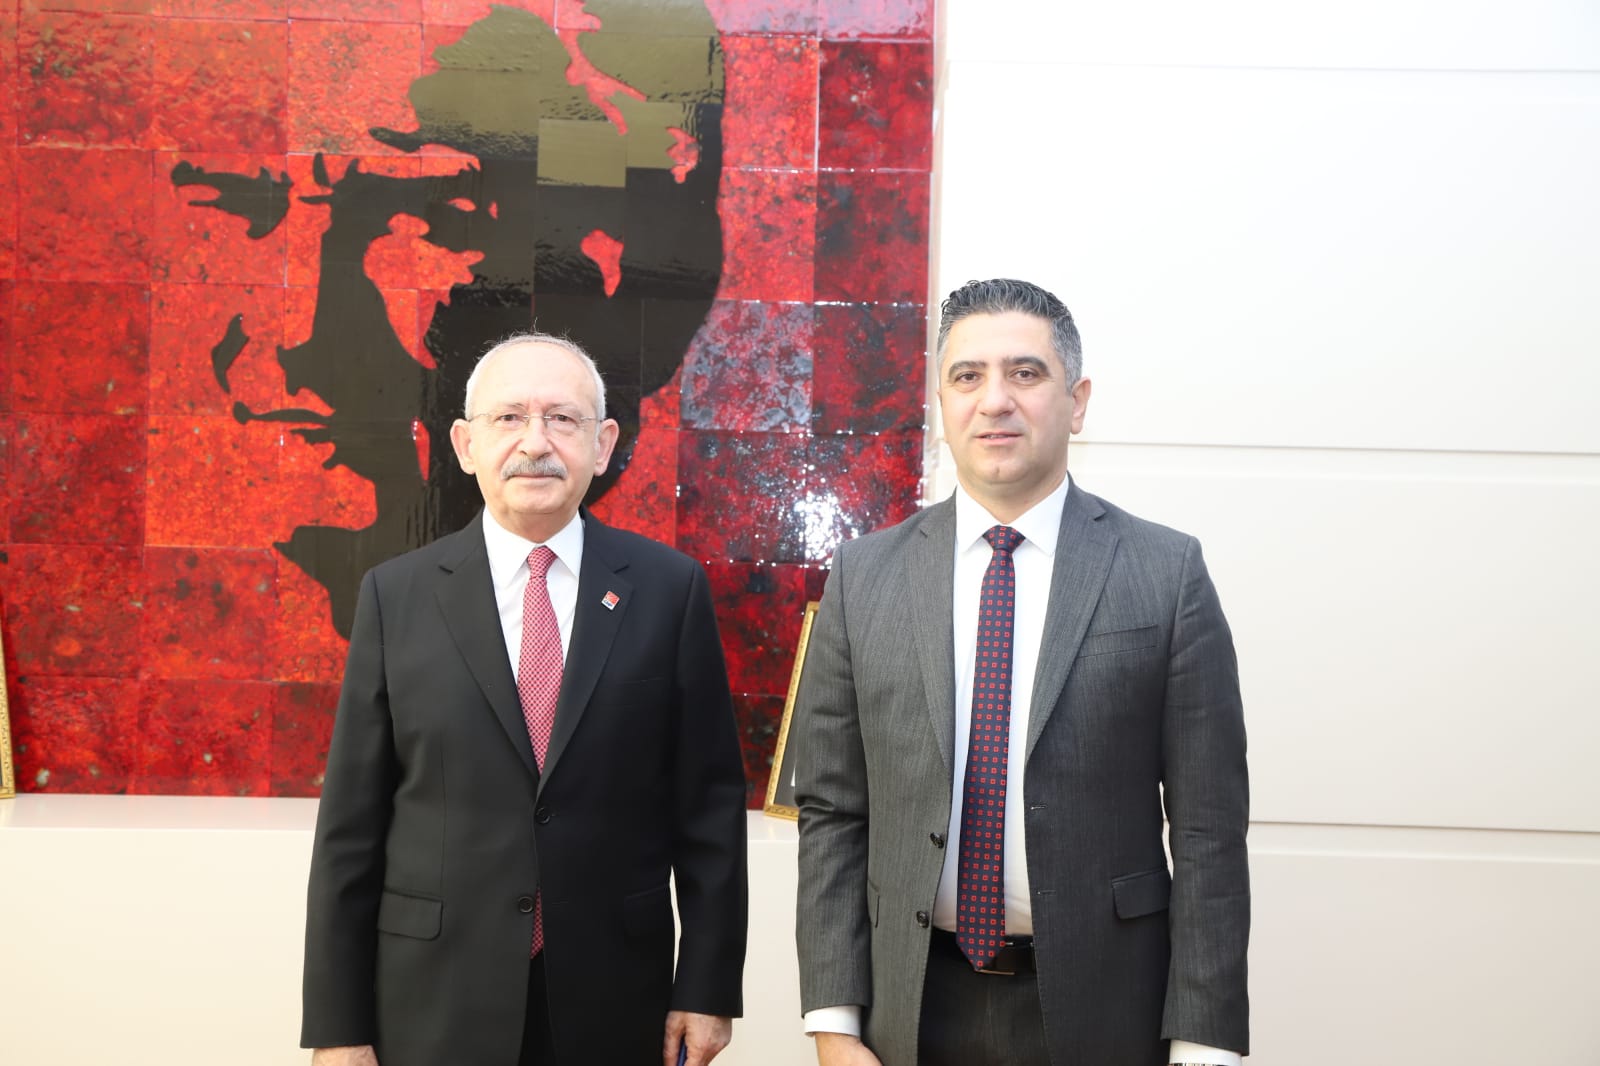 Başkan Kayalar'dan Kılıçdaroğlu'na Hizmet Raporu